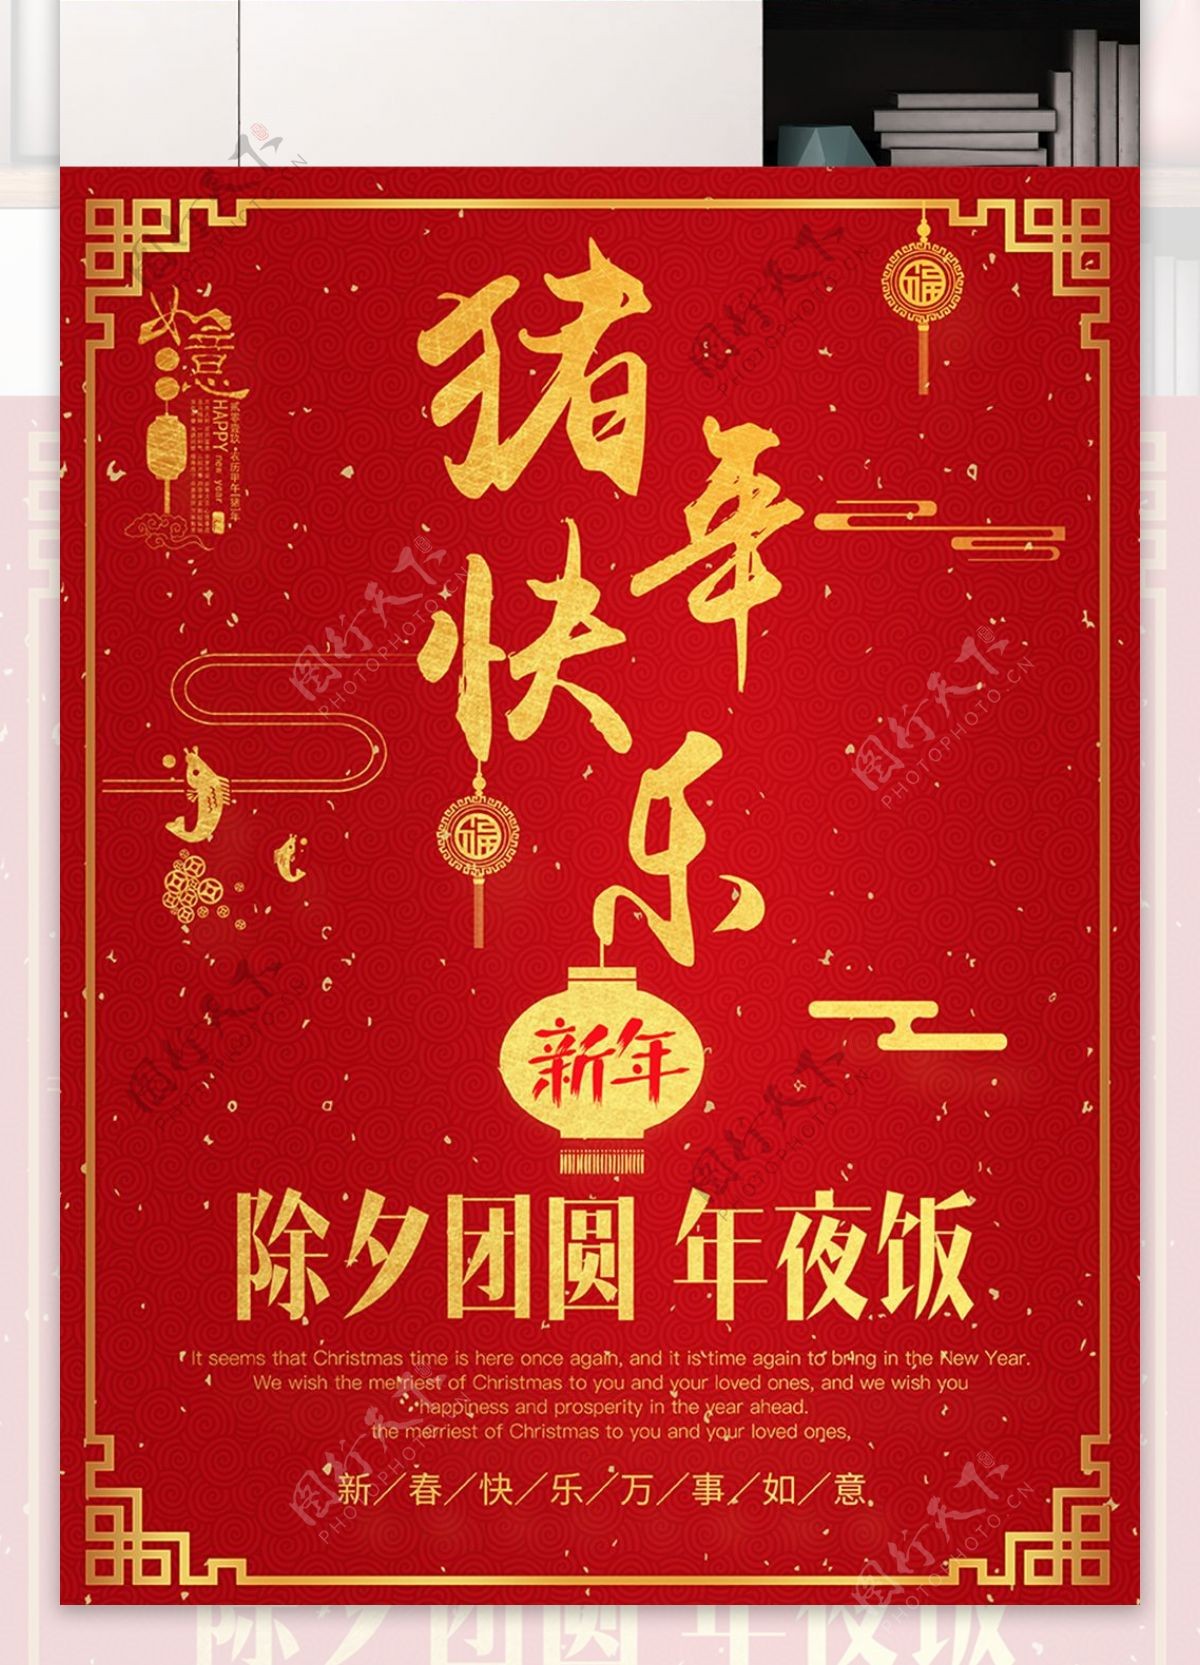 中国风红金猪年海报模版